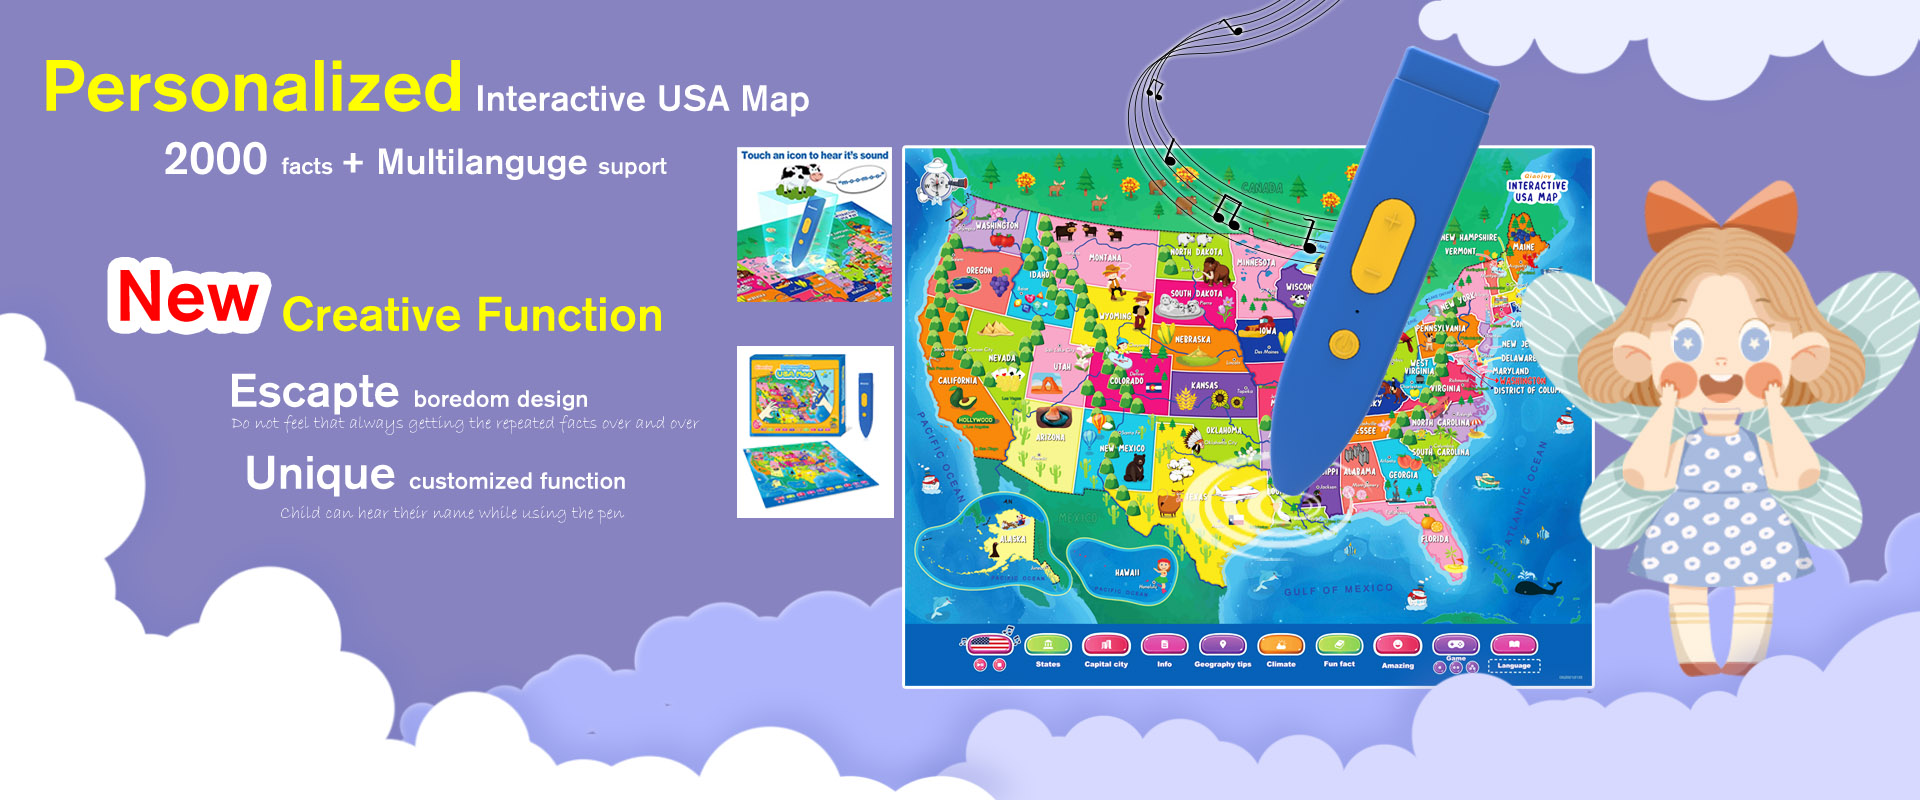 interacive USA map